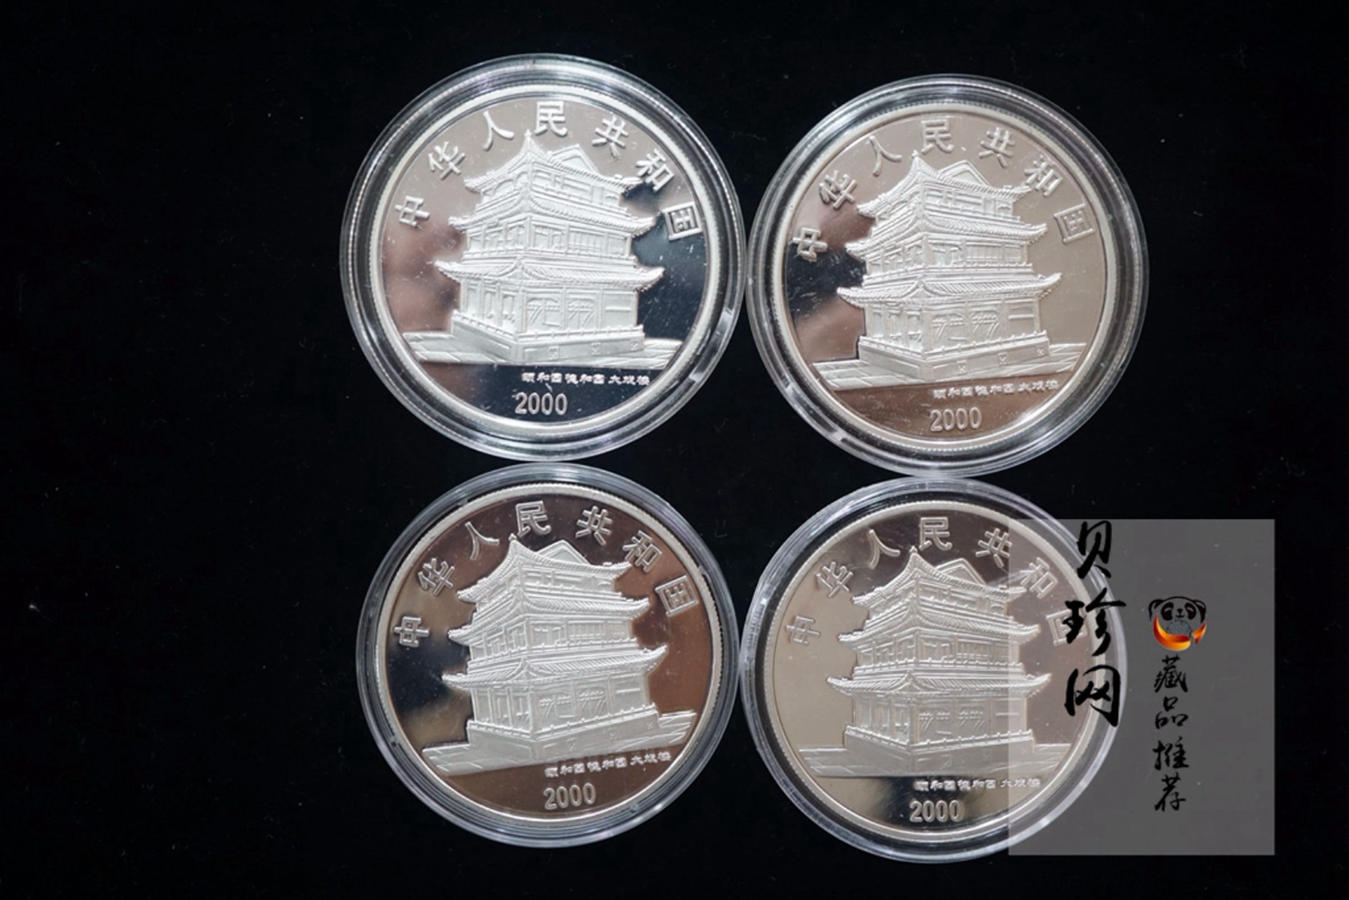 【000704】2000年中国京剧艺术彩色金银纪念币（第2组）-京剧《霸王别姬》1盎司彩色精制银币